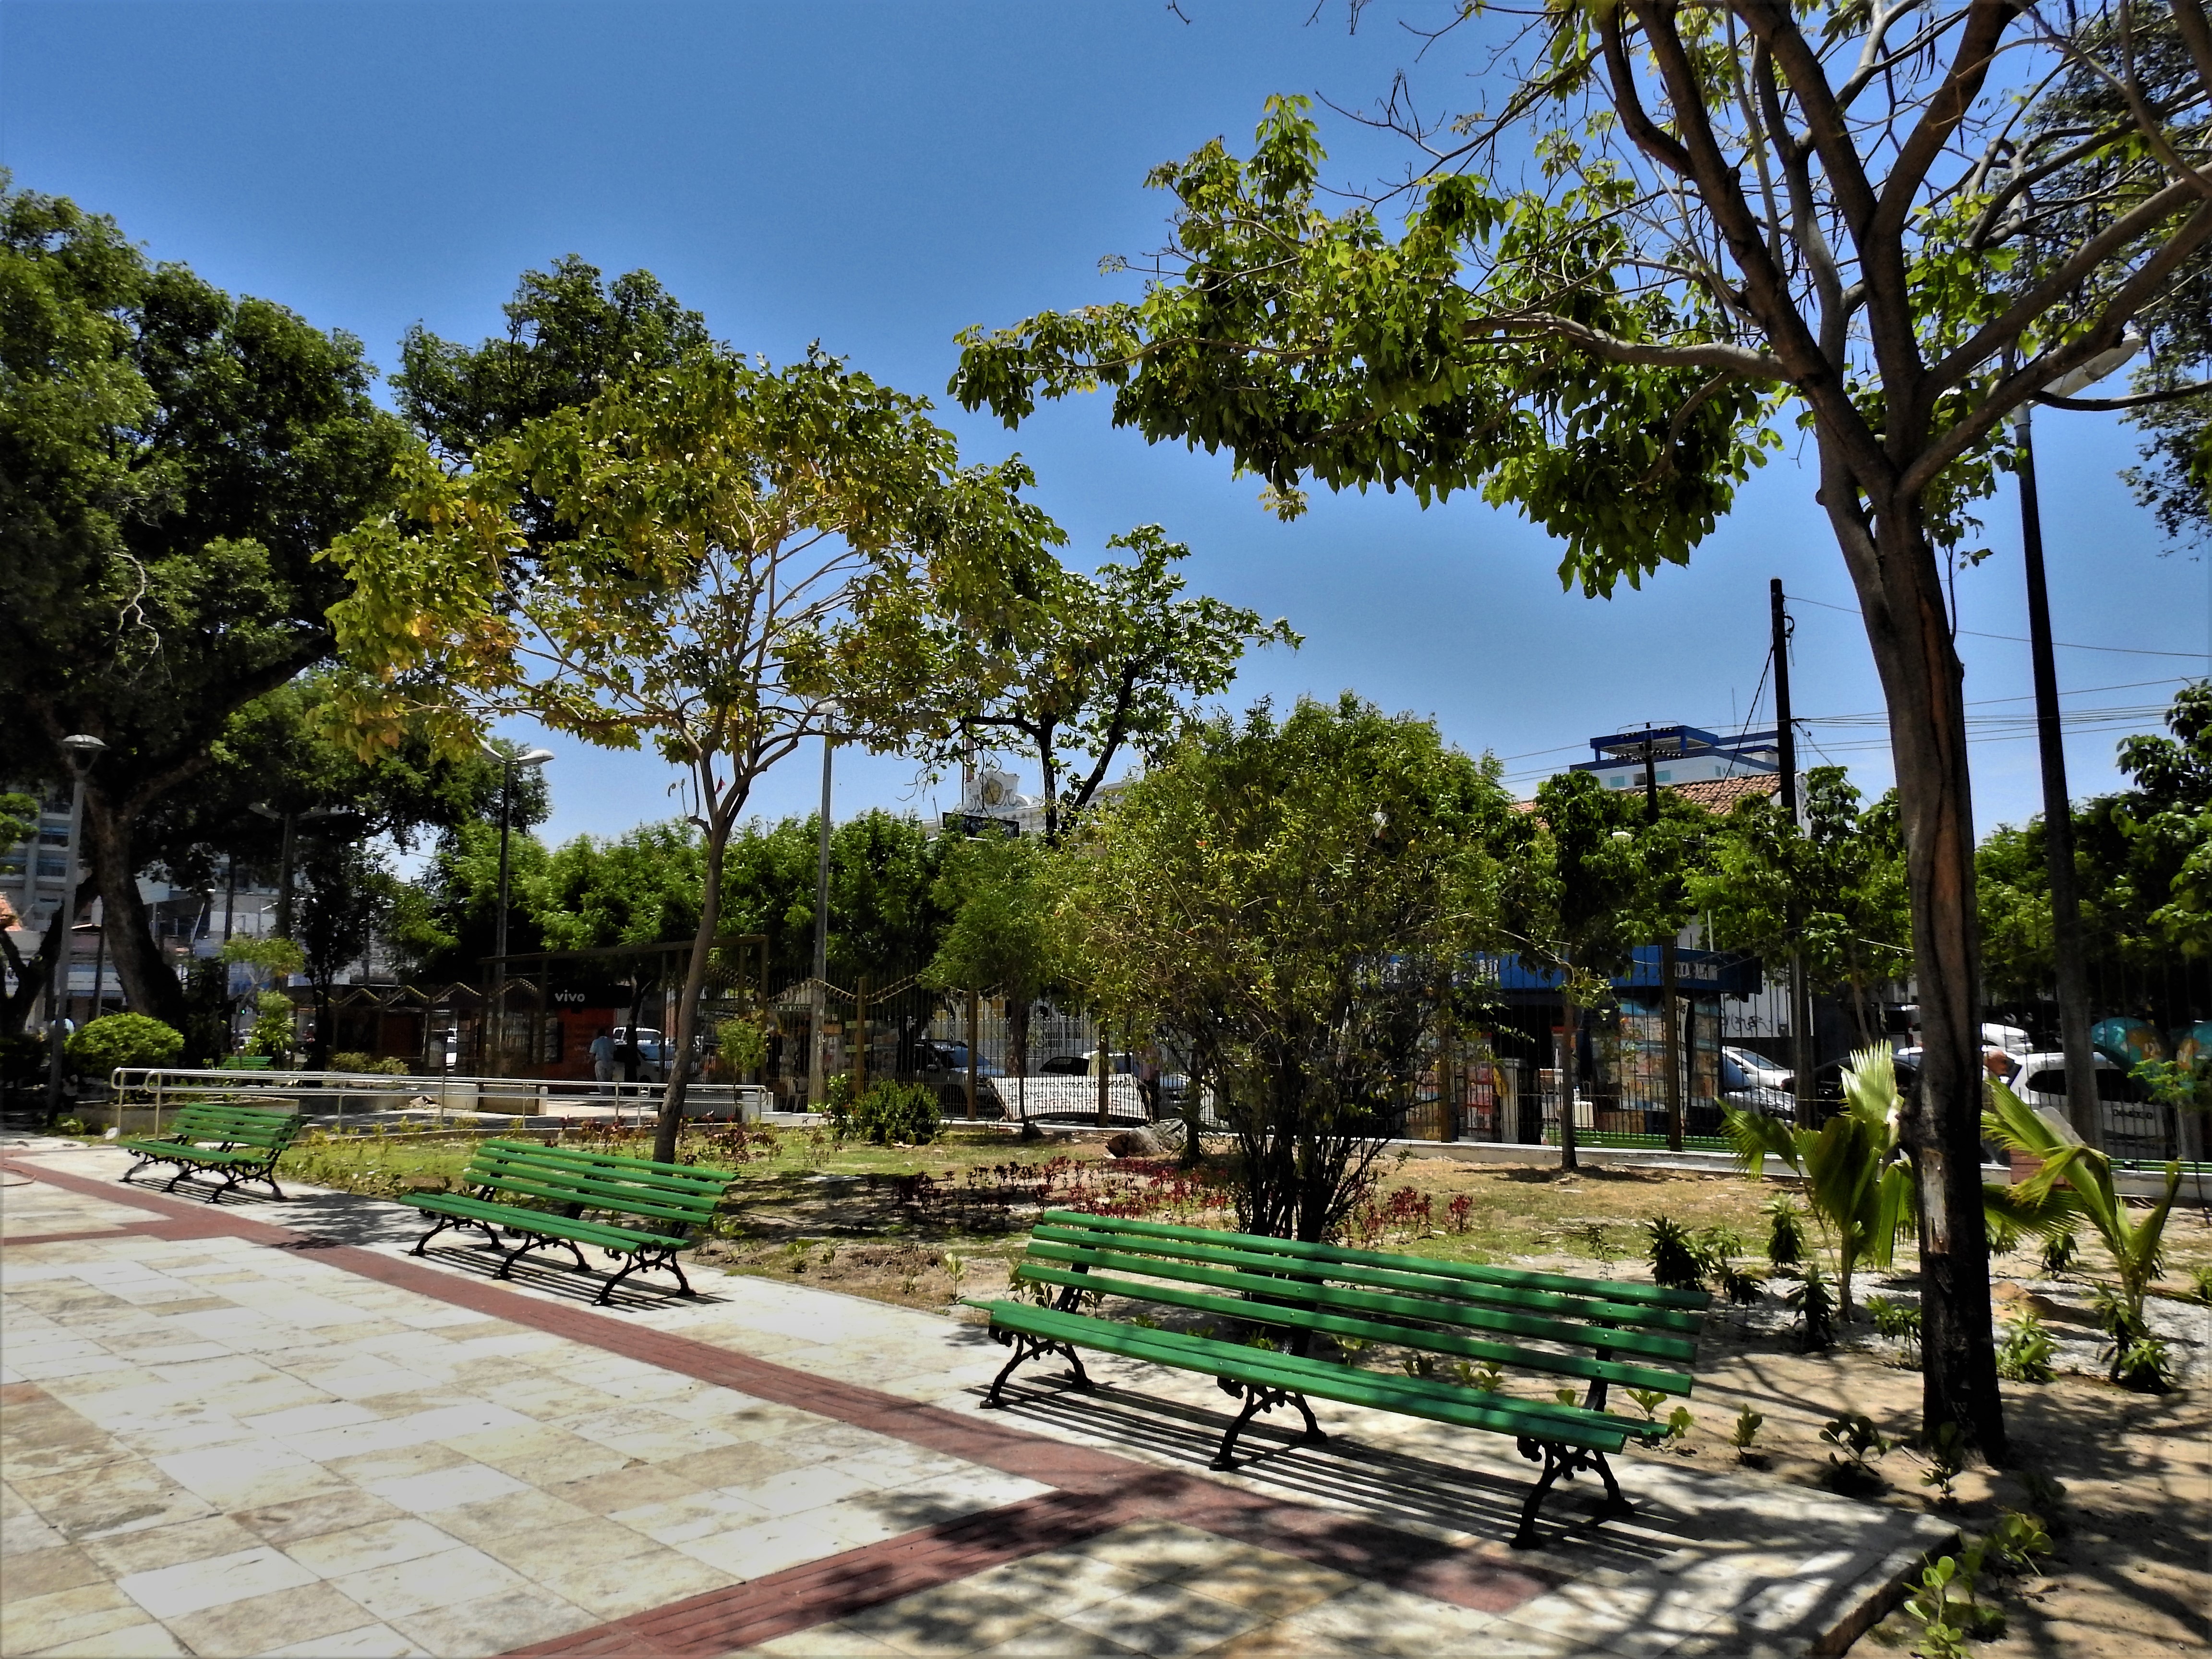 Praça em Fortaleza sendo sombreada por árvores verdes, em Fortaleza